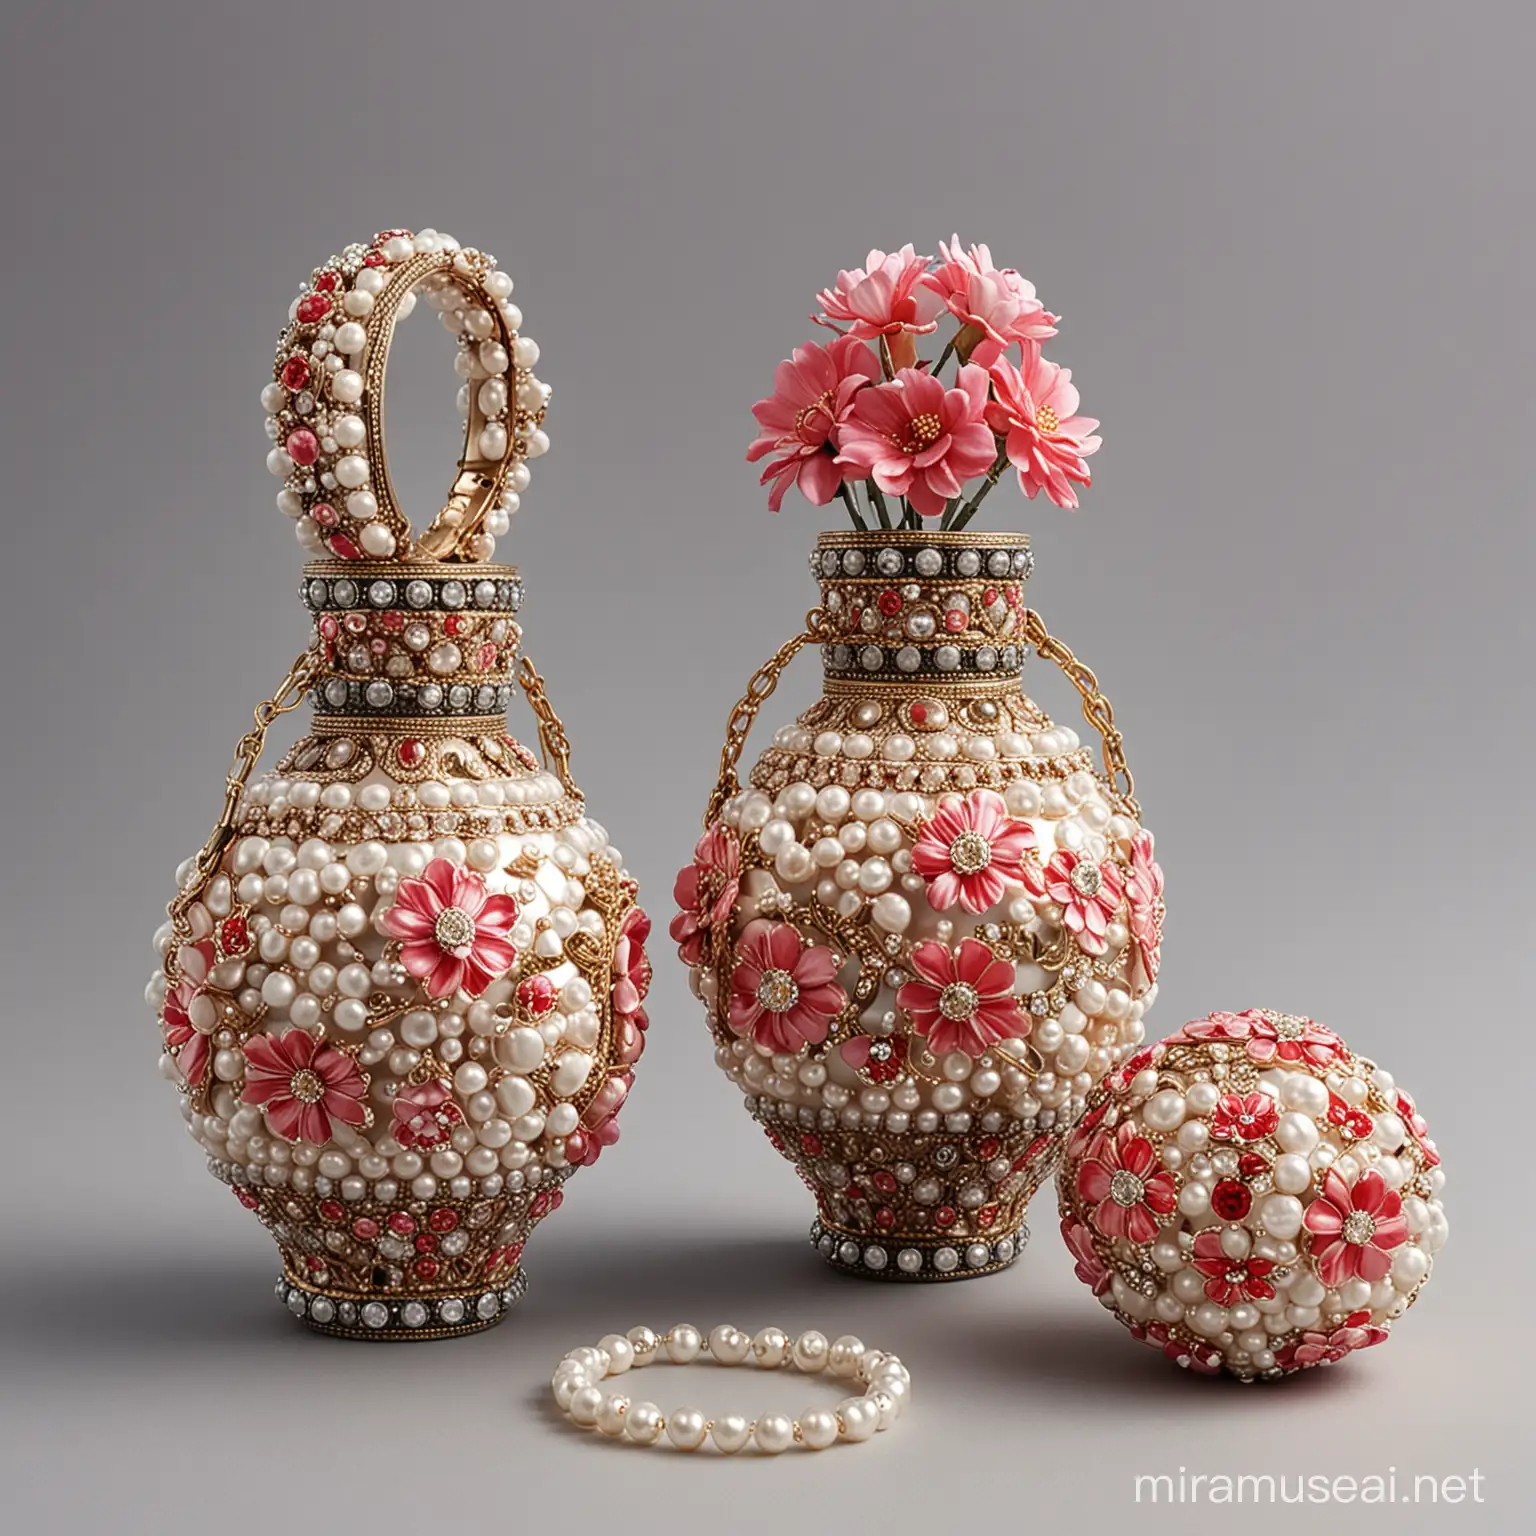 Elegant VaseShaped Bag with Circular Bracelet and Floral Embellishments